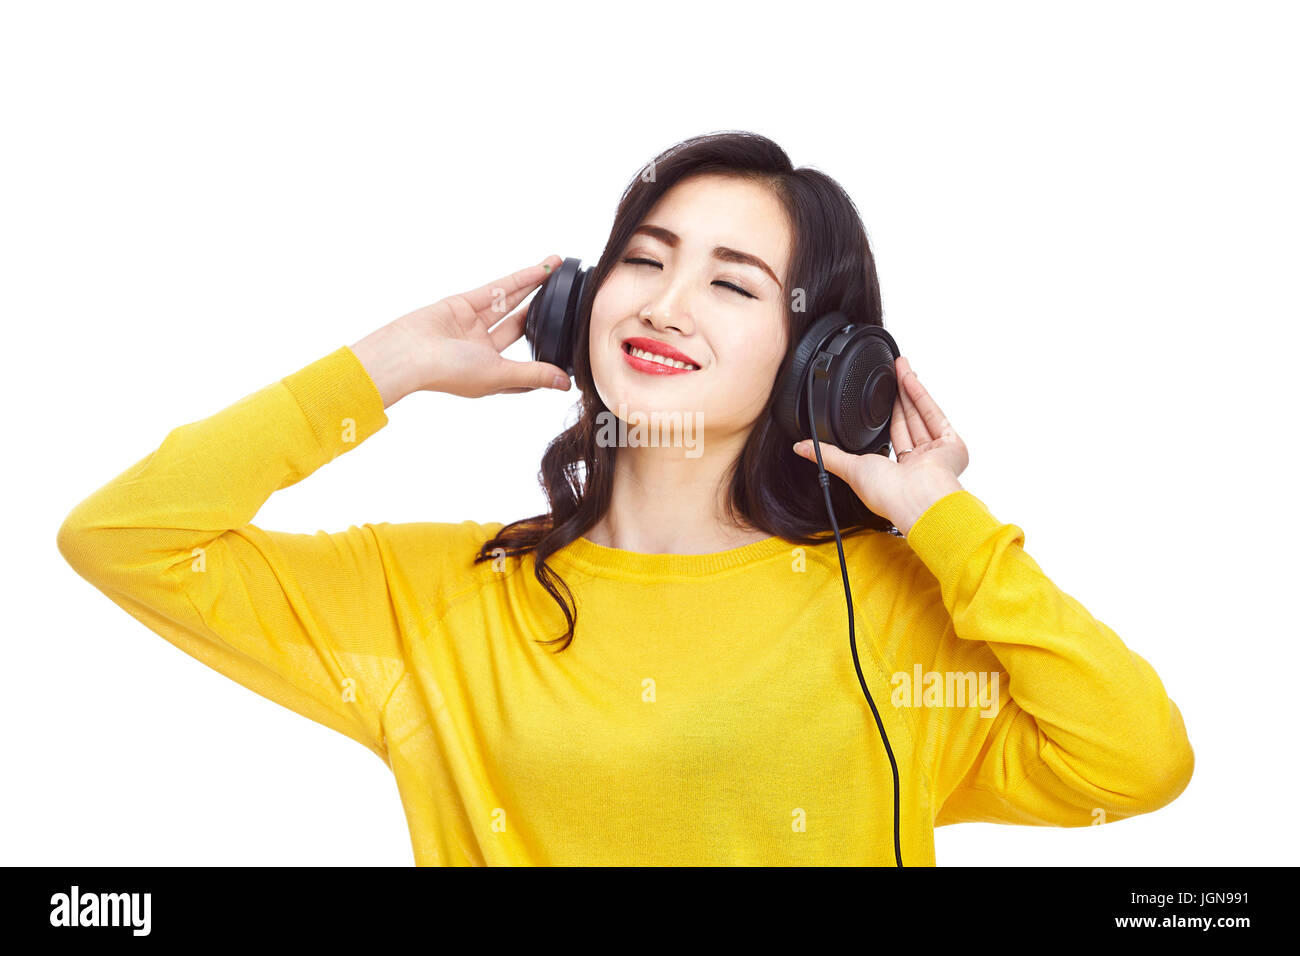 Young Asian woman enjoying music avec casque, isolé sur fond blanc. Banque D'Images